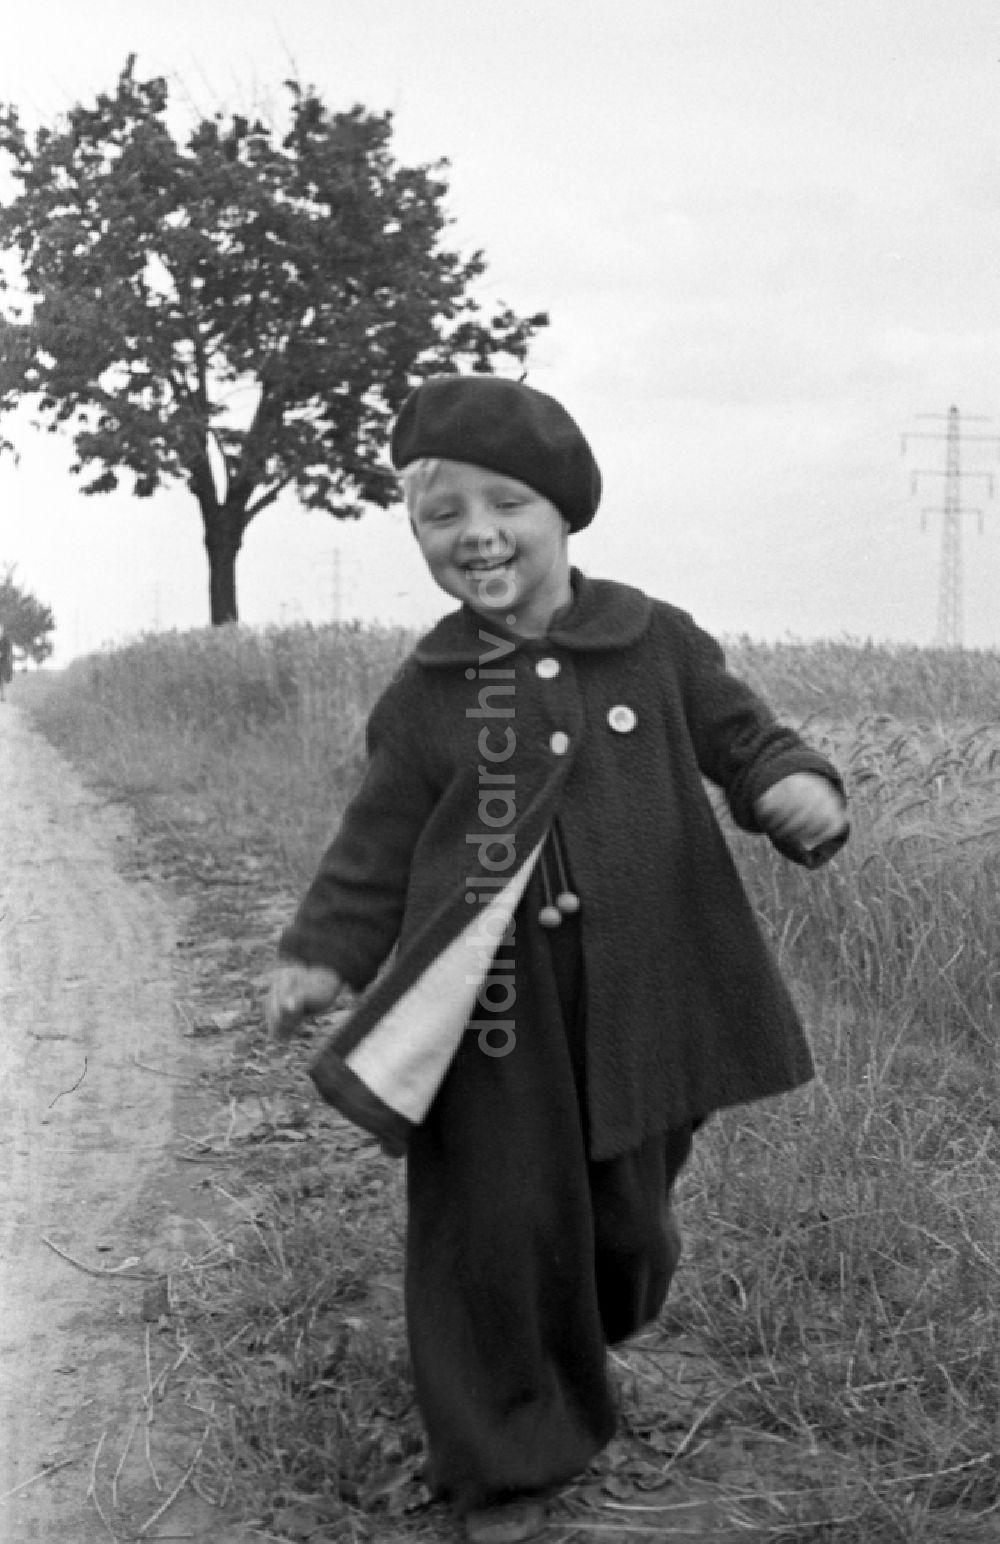 DDR-Fotoarchiv: Merseburg - Kleines Kind in Pumphosen und mit Baskenmütze in Merseburg in Sachsen-Anhalt in der DDR